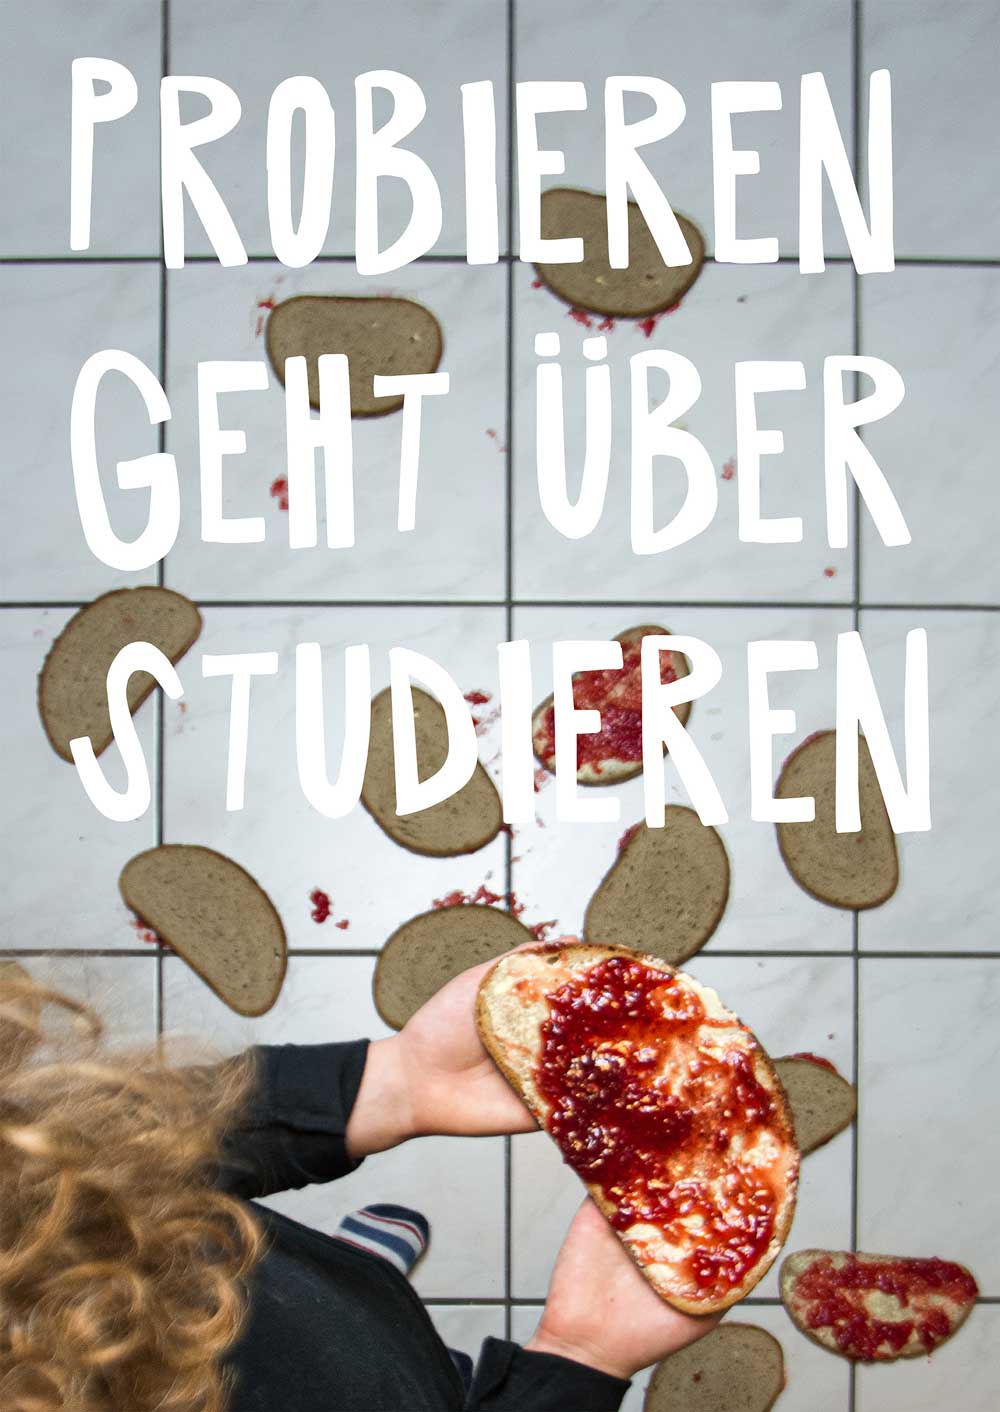 34. Plakatwettbewerb des Deutschen Studentenwerks